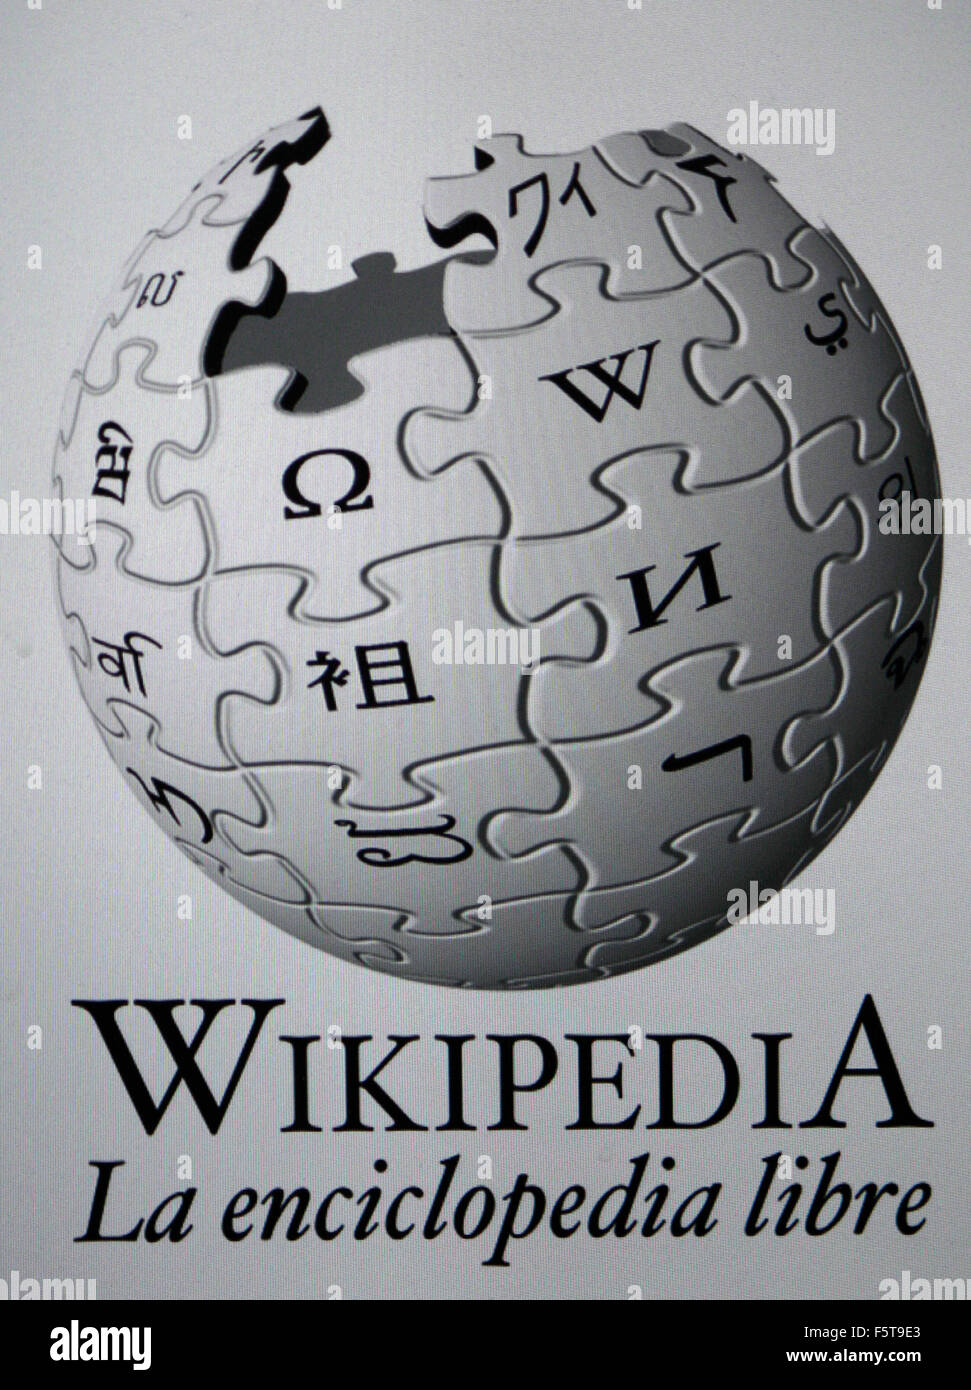 Broche de presión - Wikipedia, la enciclopedia libre